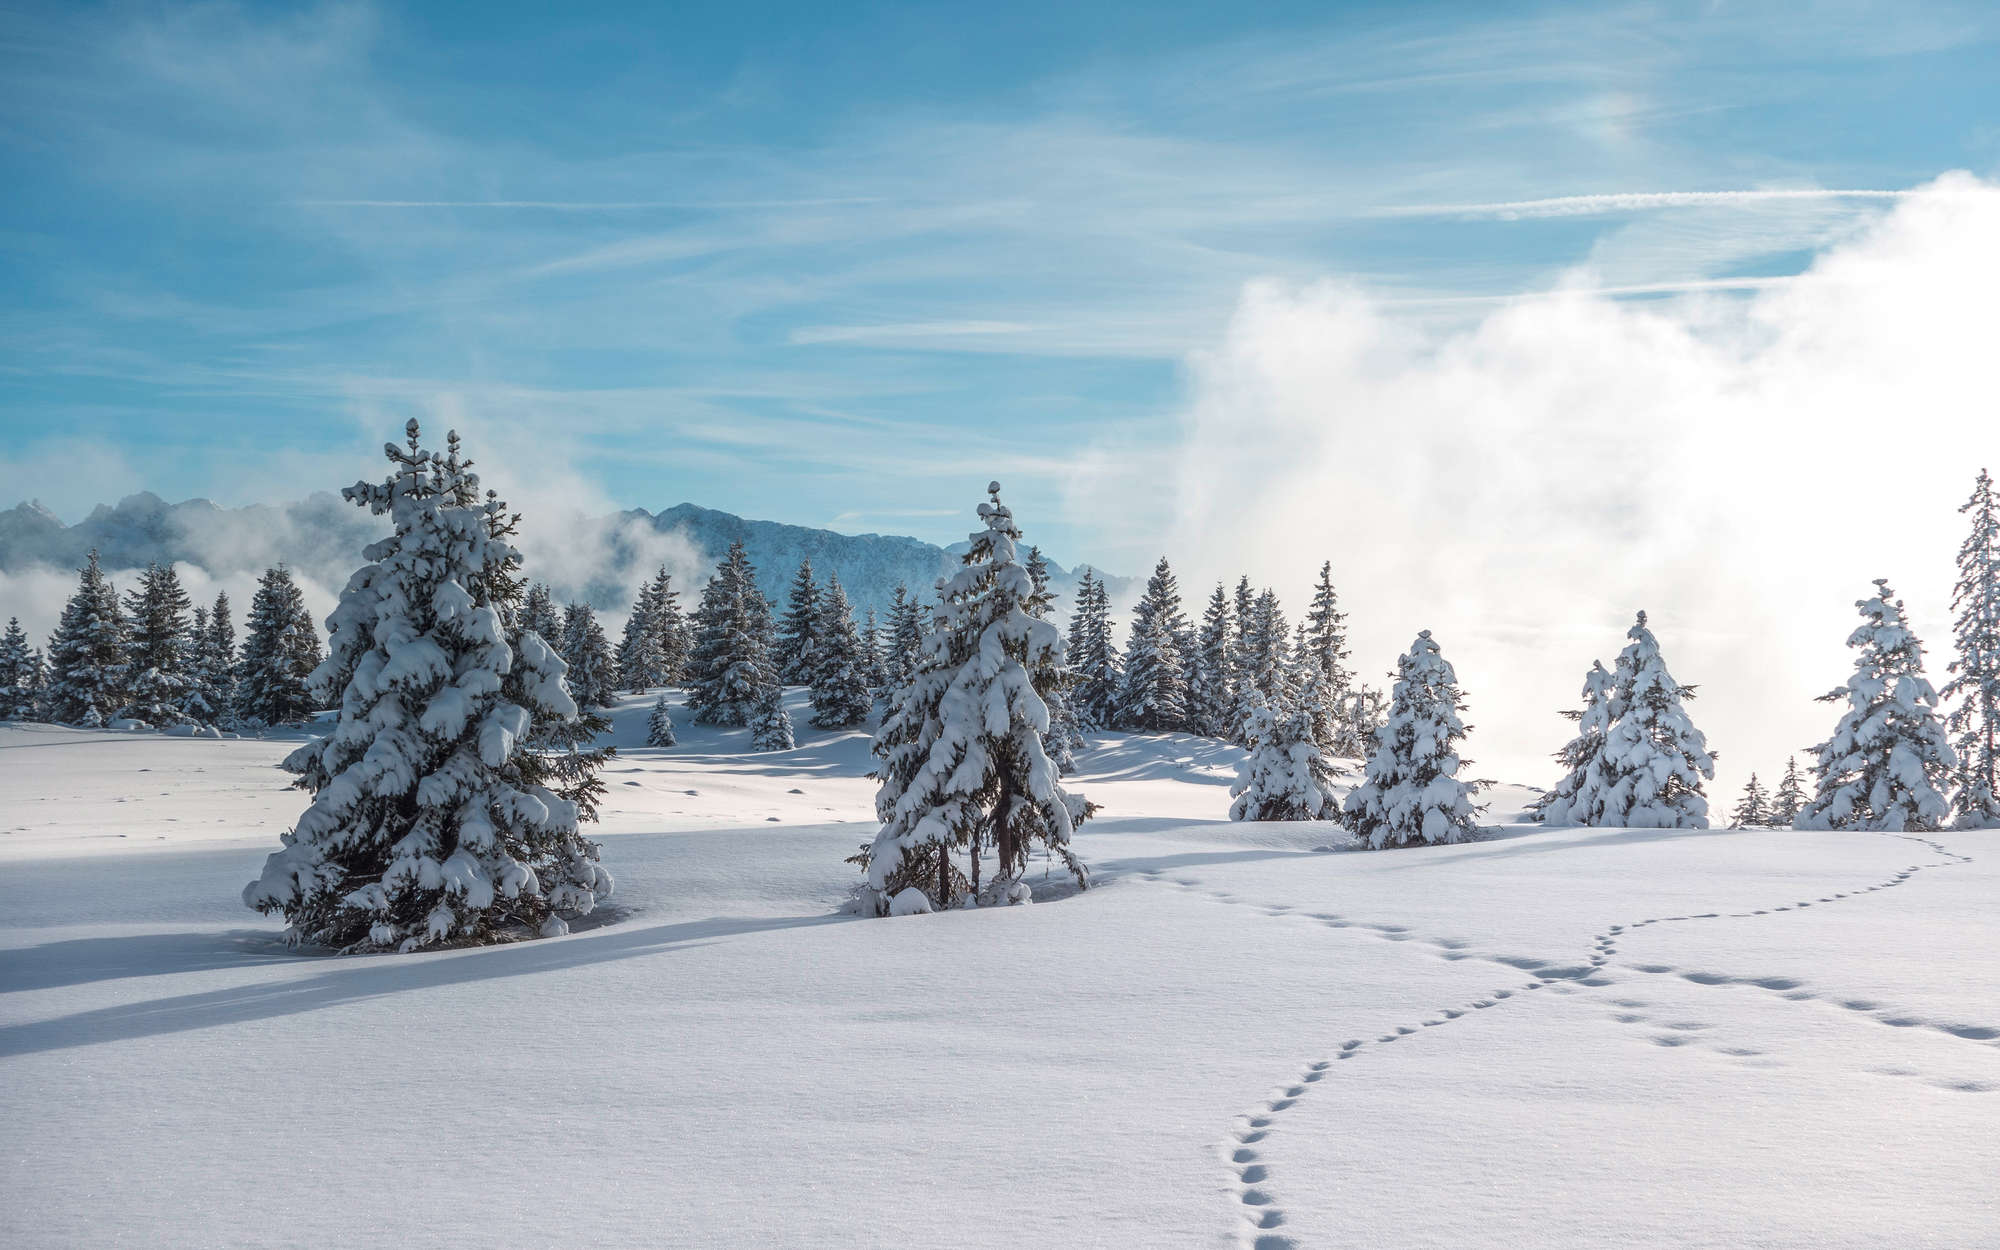             Fotomural Nieve y huellas en bosque invernal - Tela sin tejer con textura
        